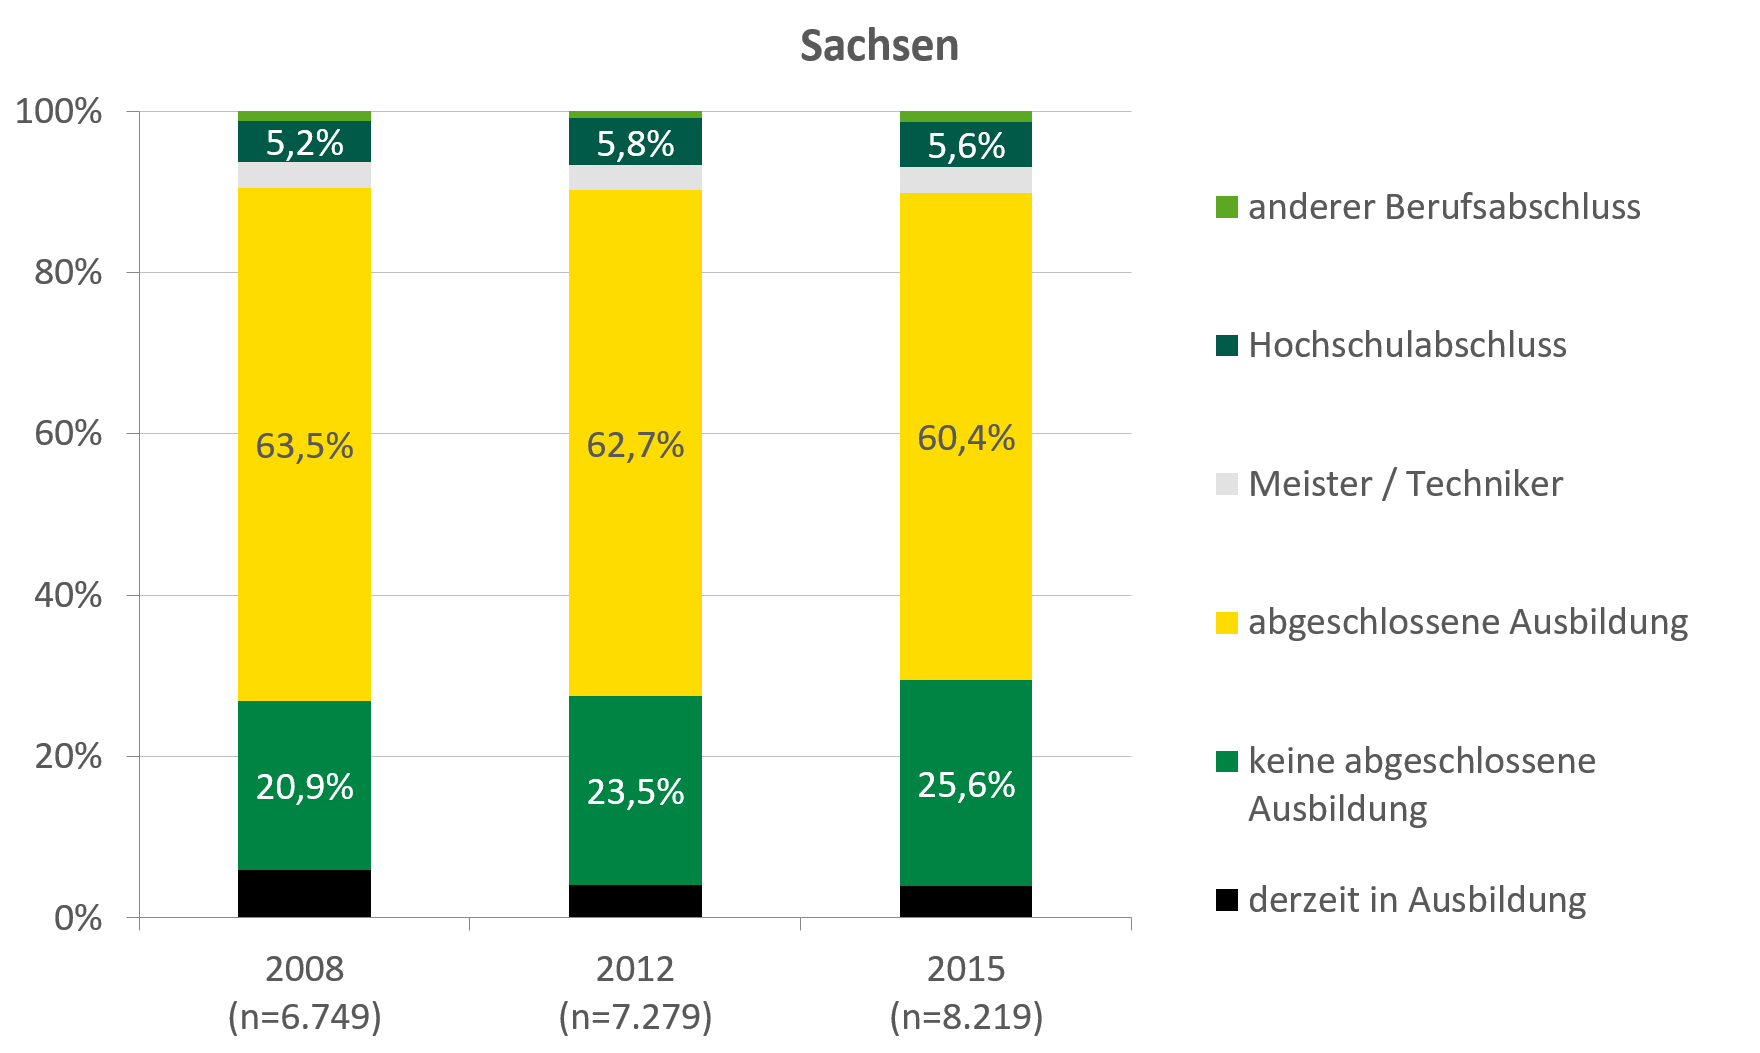 In Sachsen haben über 60 Prozent der Klientel eine abgeschlossene Ausbildung, 5,6 Prozent haben einen Hochschulabschluss. In Deutschland haben knapp 55 Prozent der Klientel eine abgeschlossene Ausbildung, 5,1 Prozent haben einen Hochschulabschluss.